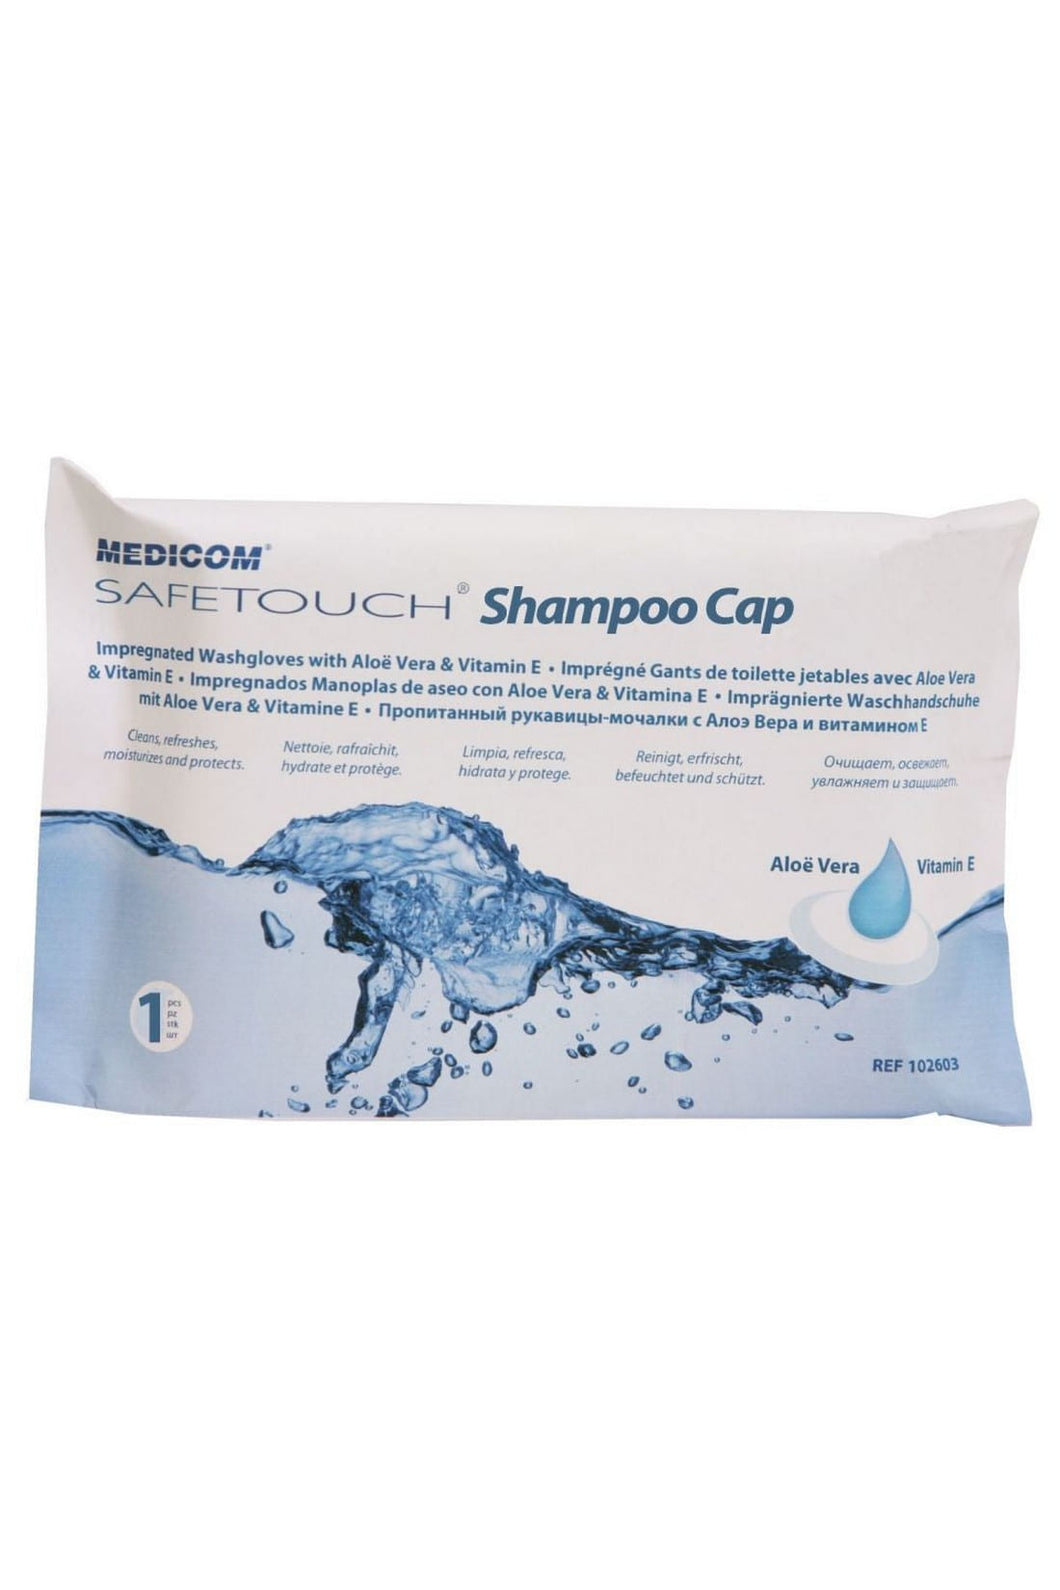 Medicom Safetouch Shampoo Cap